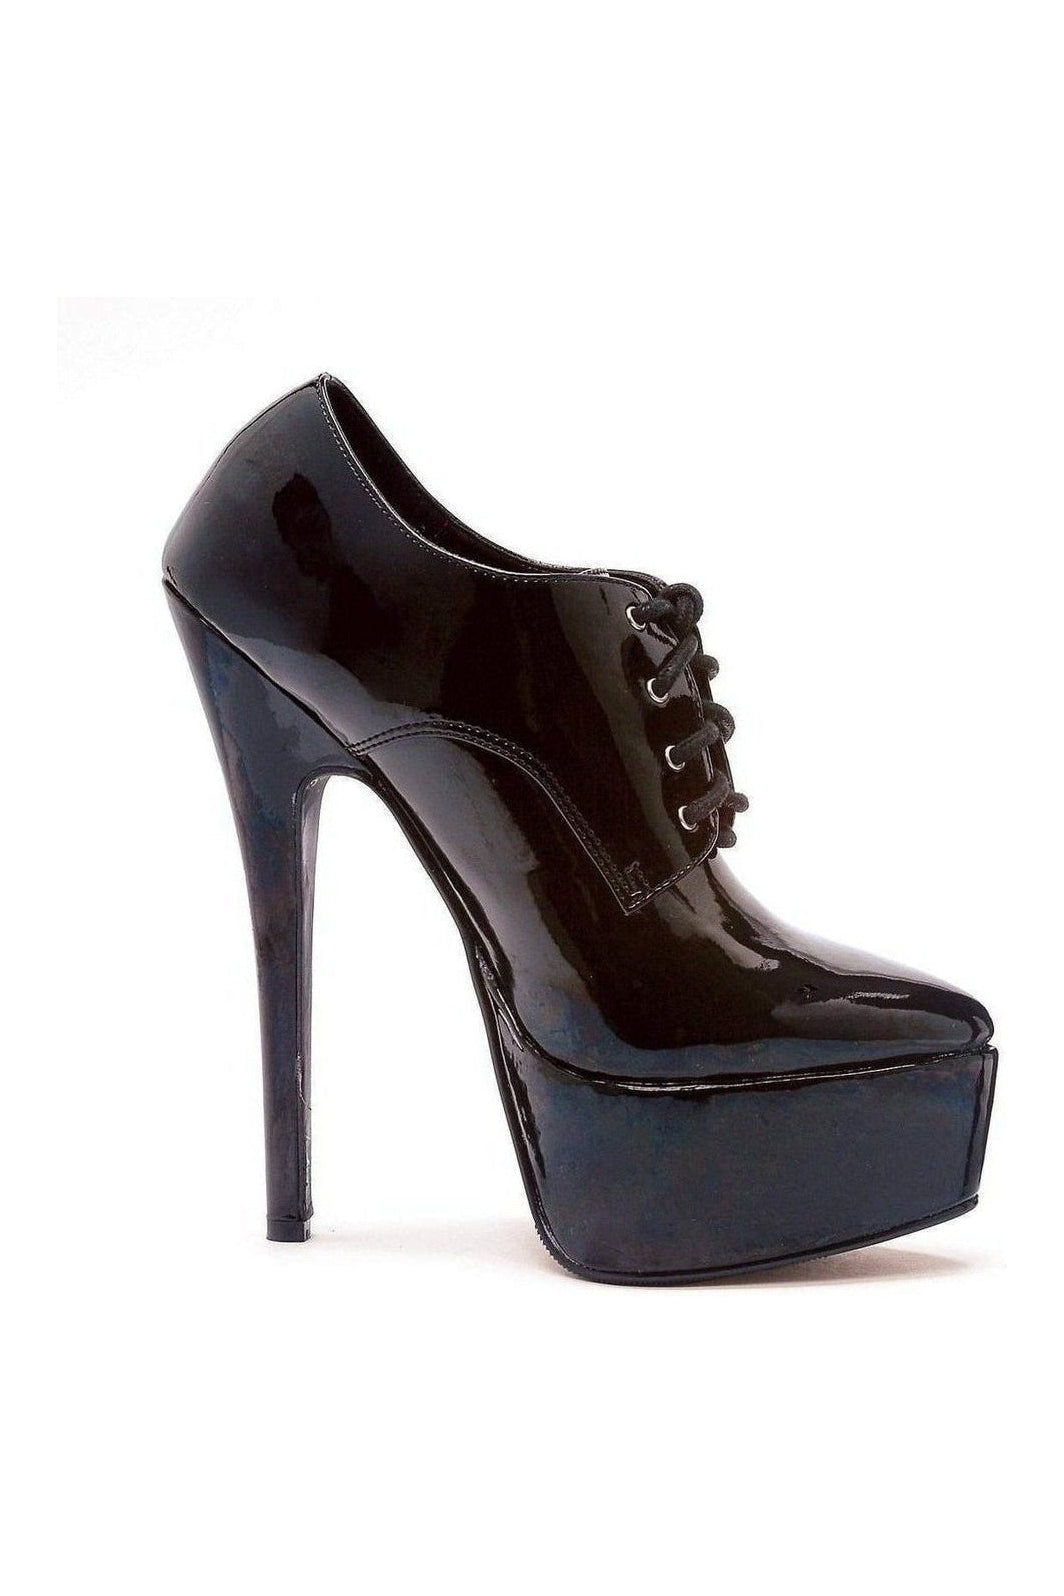 652-OXFORD Platform Pump | Black Patent-Ellie Shoes-SEXYSHOES.COM